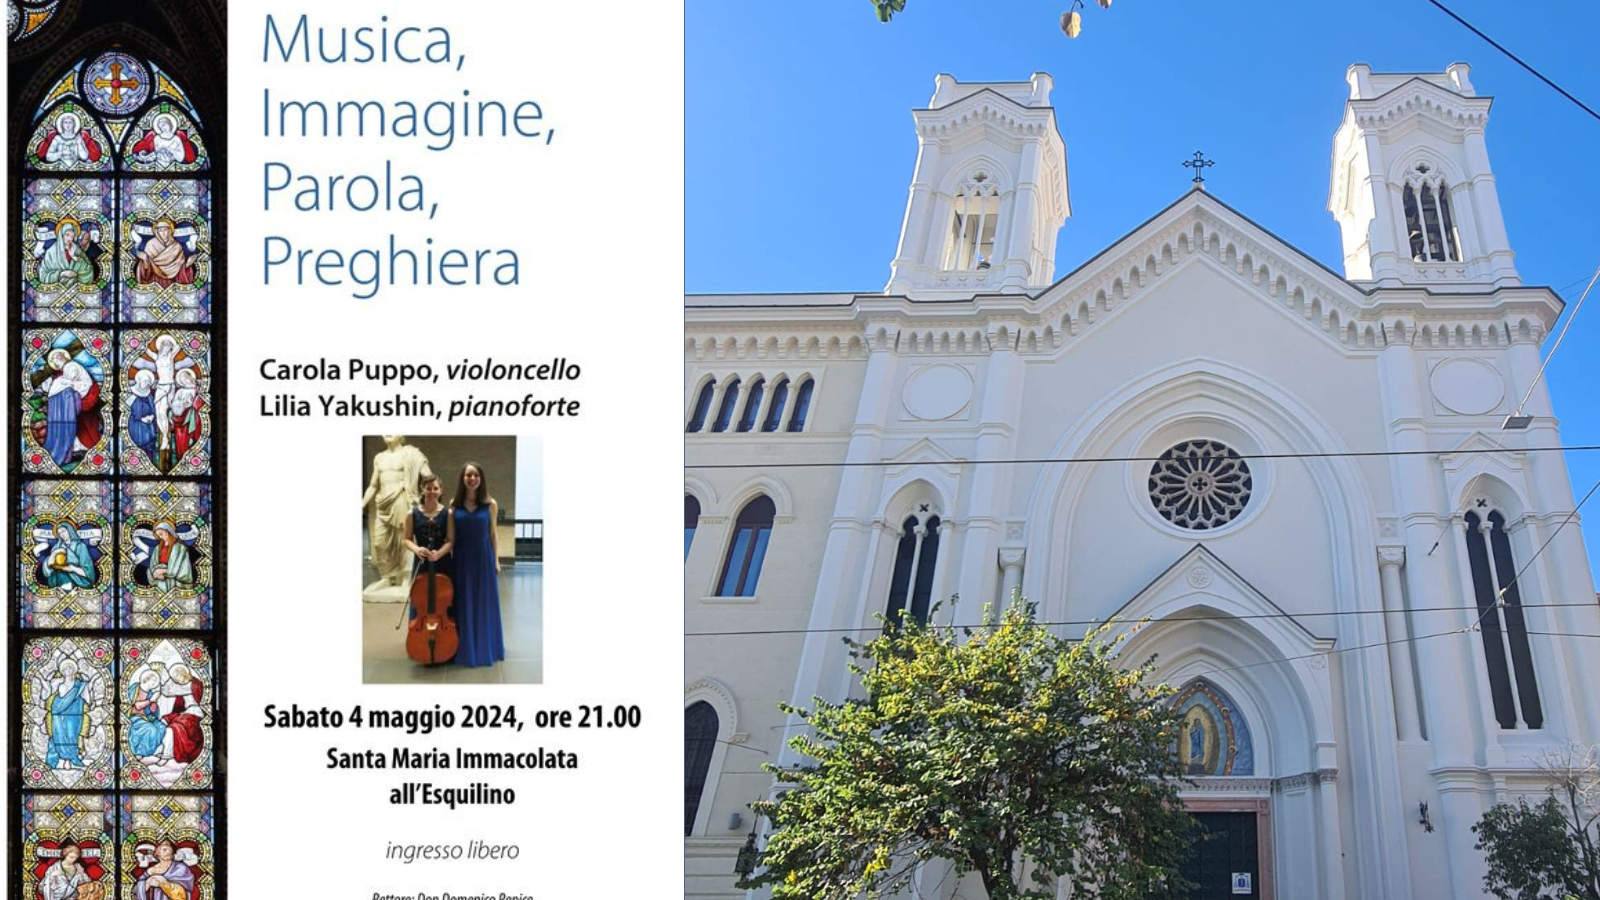 4/5/24 “Concerto di Carola Puppo, violoncello e Lilia Yakushin, pianoforte” presso la chiesa di Santa Maria Immacolata all’Esquilino